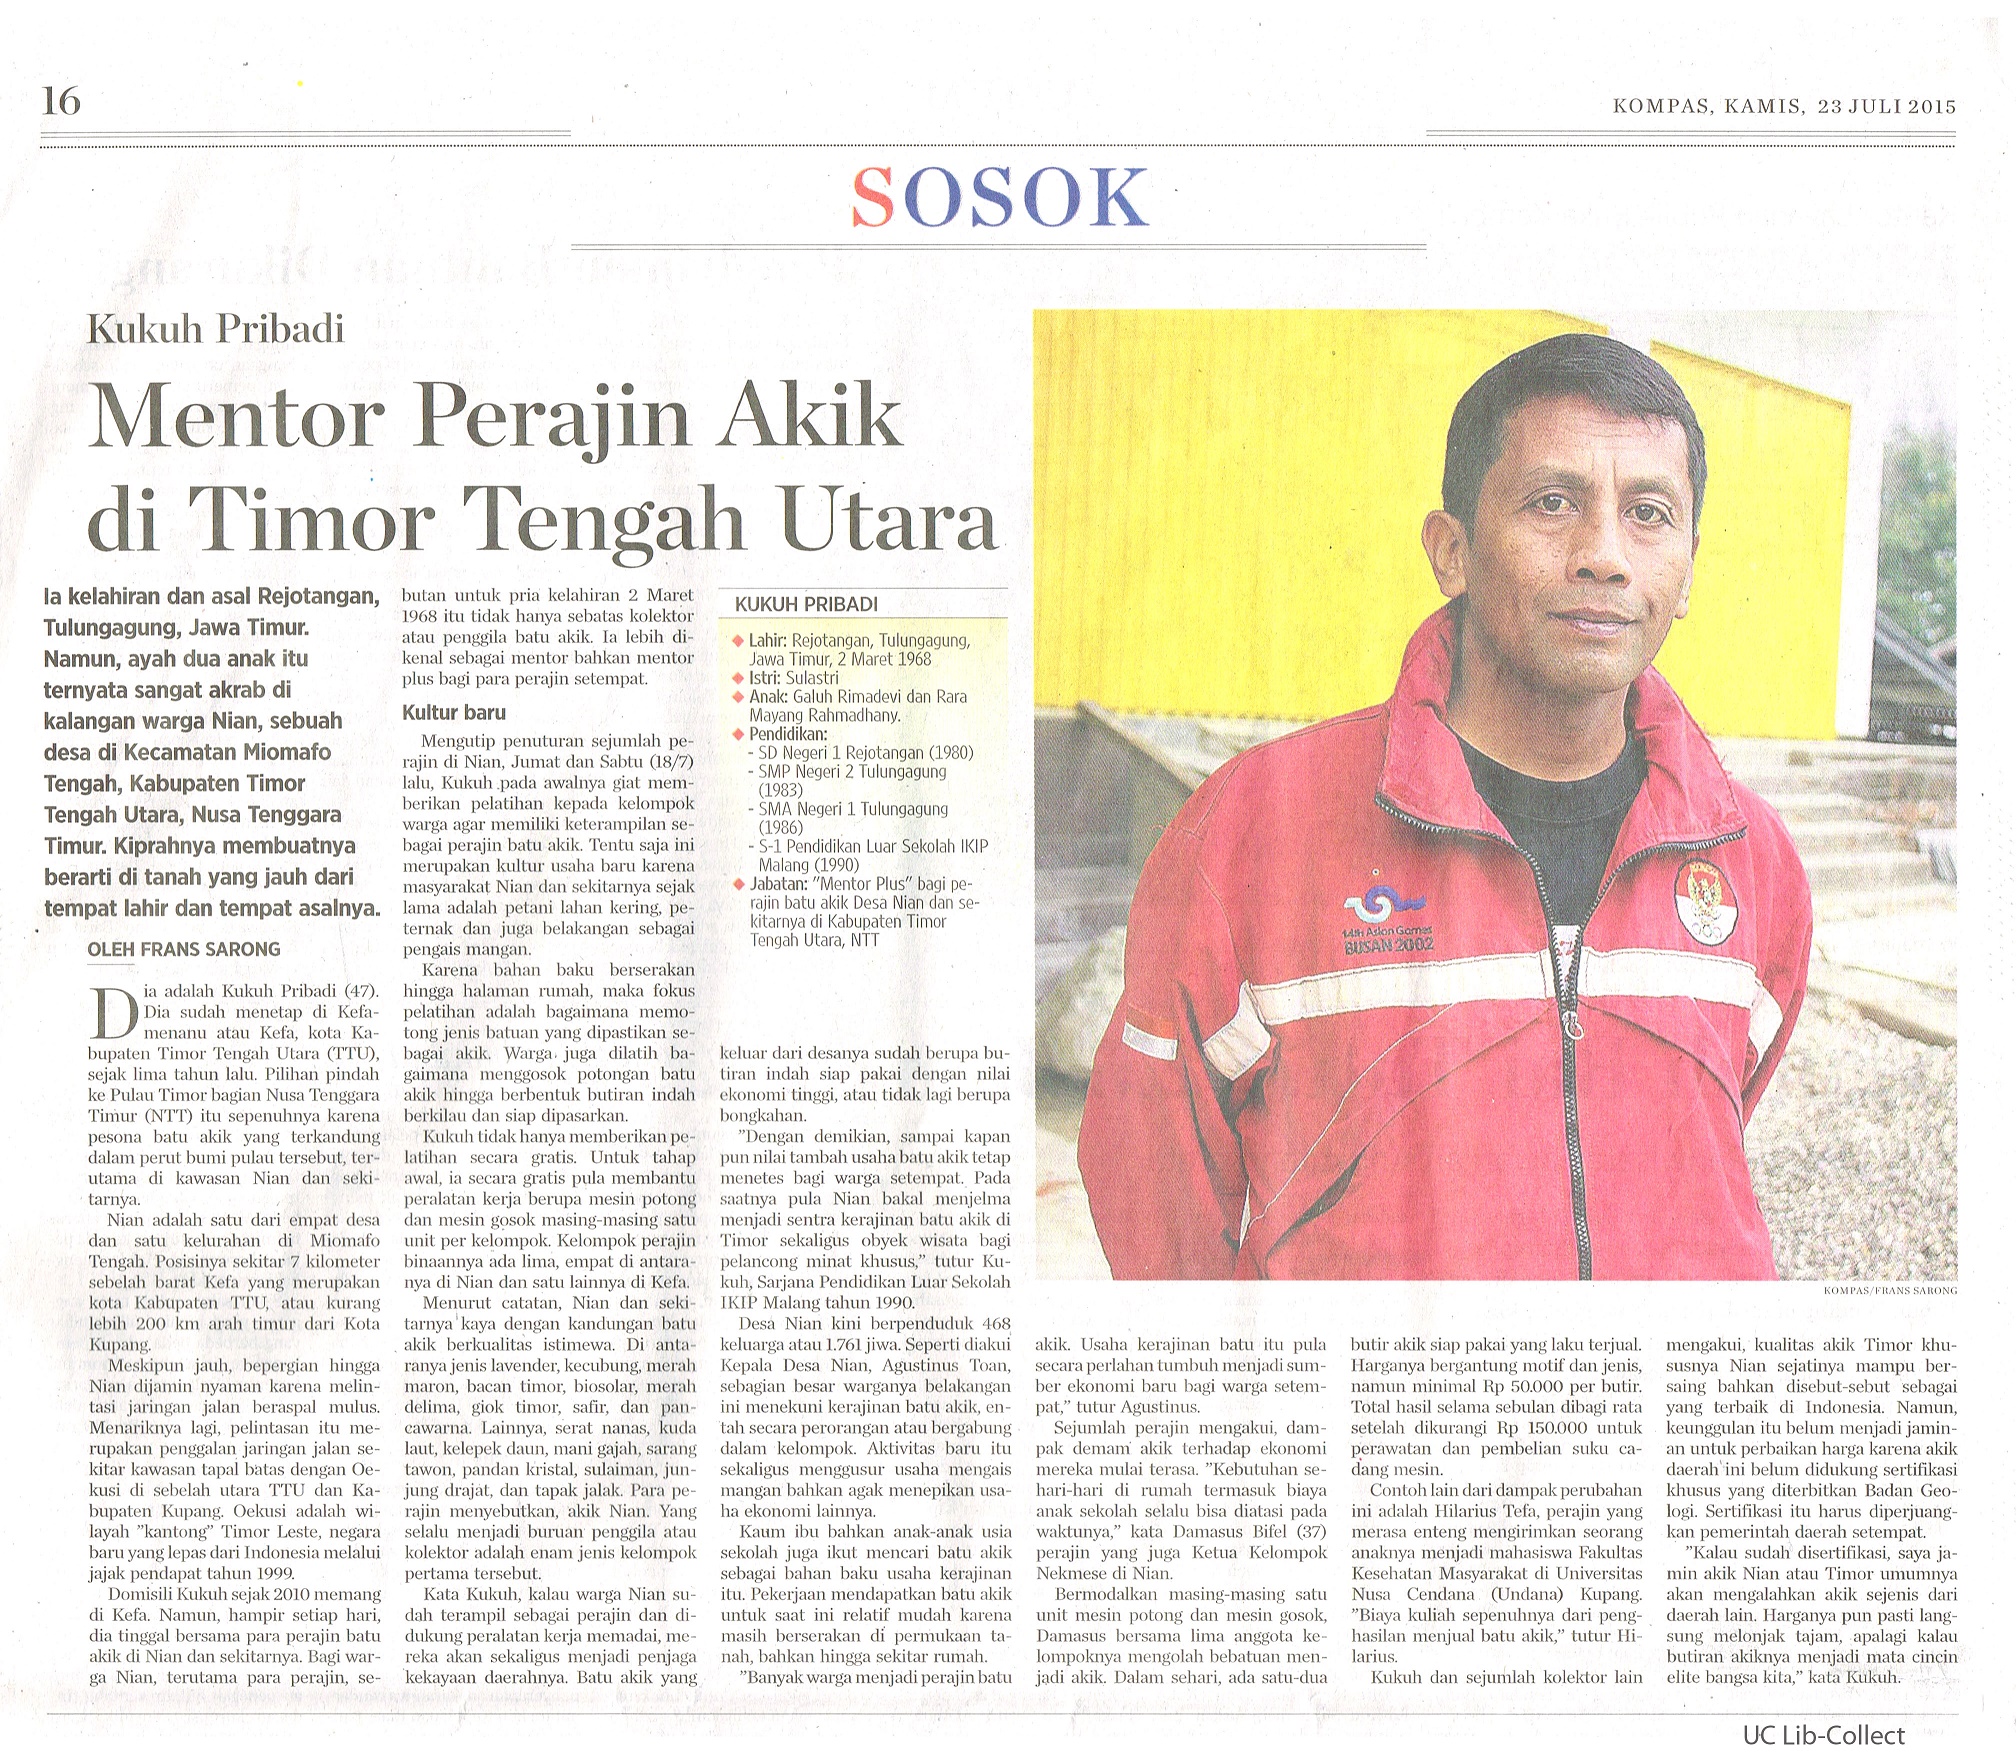 Mentor Perajin Akik di Timor Tengah Utara. Kompas.23 Juli 2015.Hal.16